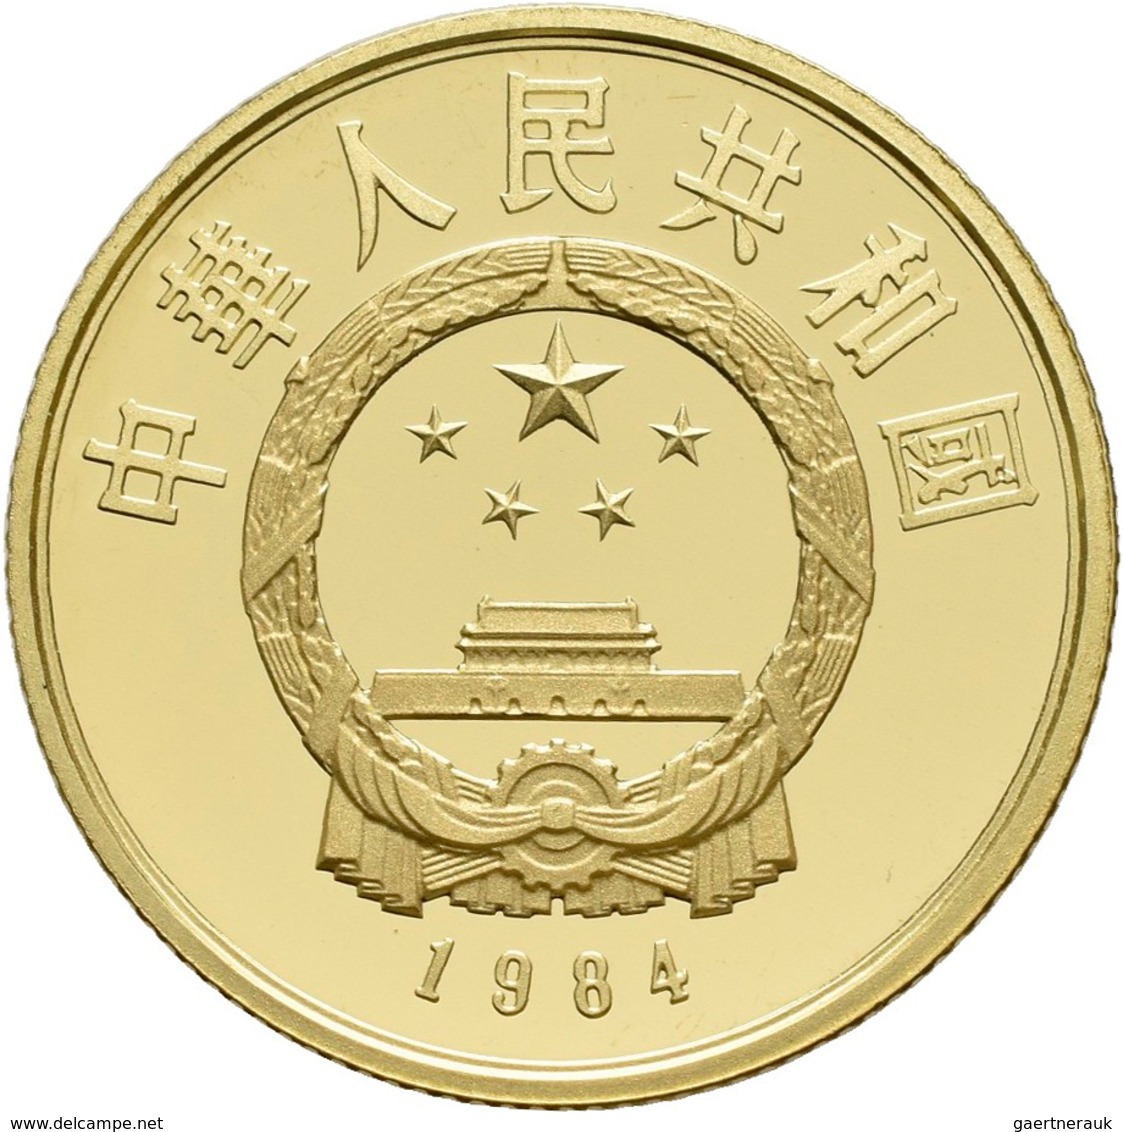 China - Volksrepublik - Anlagegold: 100 Yuan 1984, Kaiser Qin Shi Huang. KM# 102, Friedberg 16. 11,3 - China